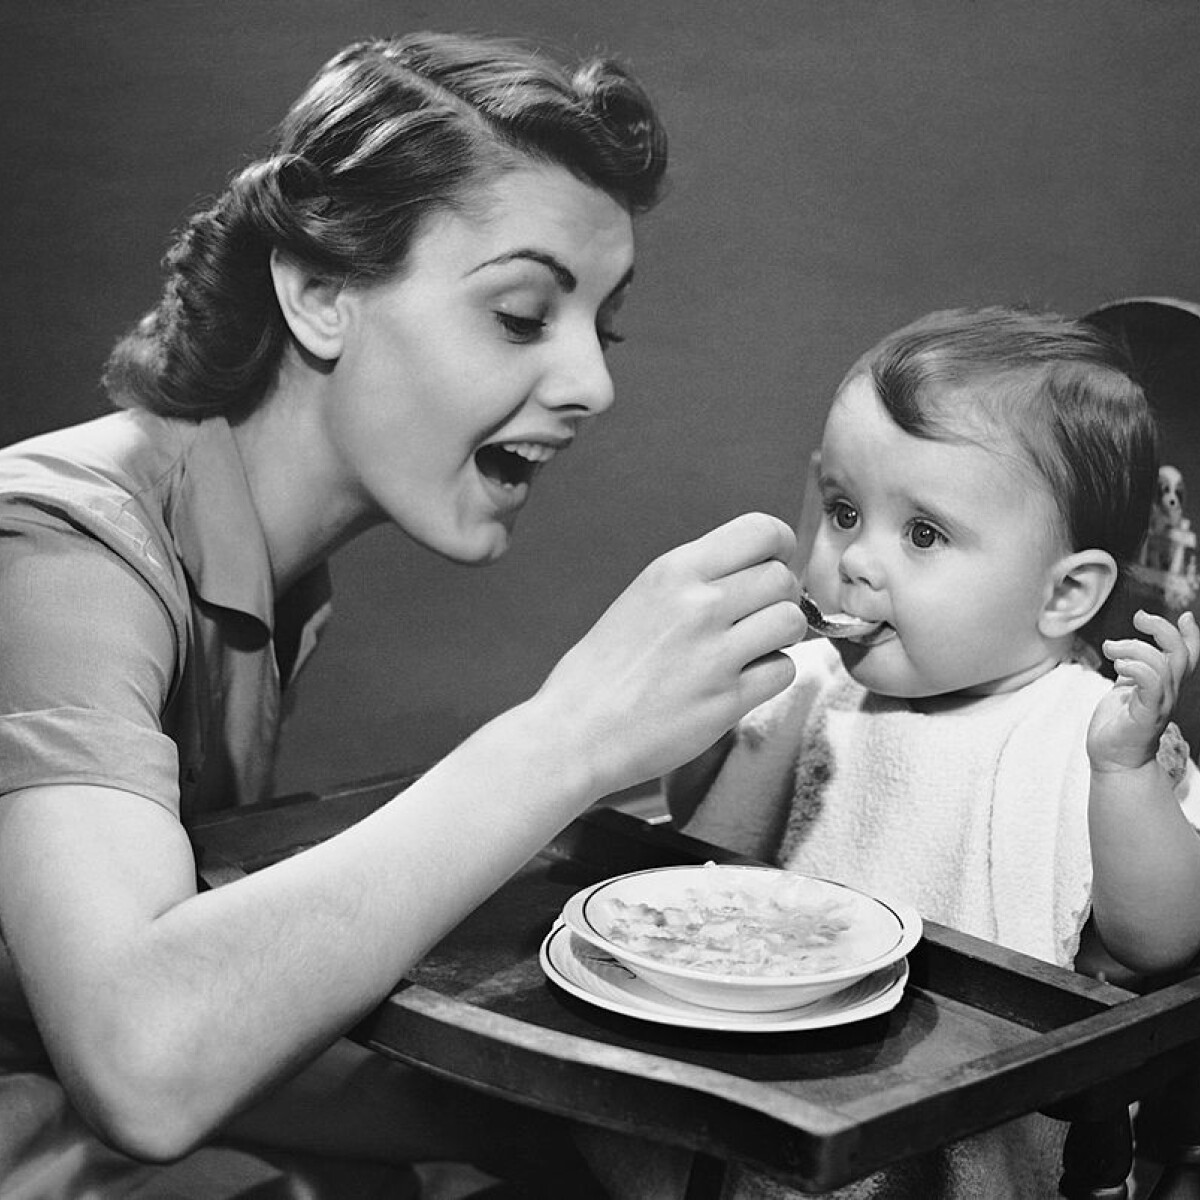 Amit gyerekként eszünk, azzá leszünk – Családi örökségünk ételeinkben is megmutatkozik